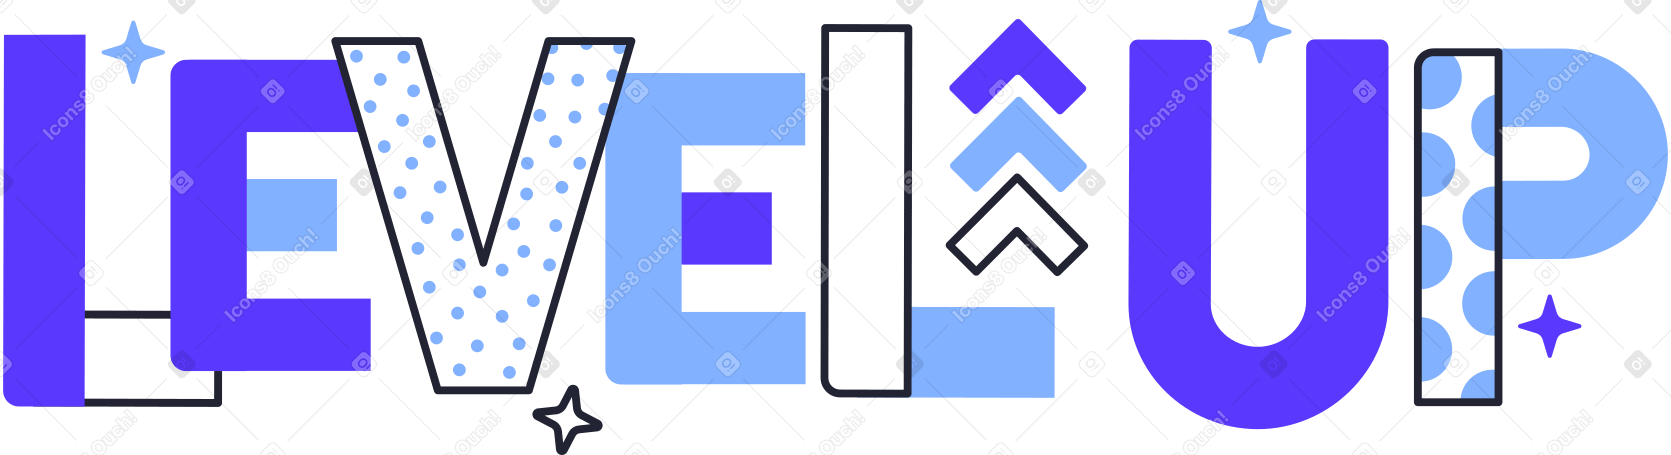 lettering level up Illustration in PNG, SVG